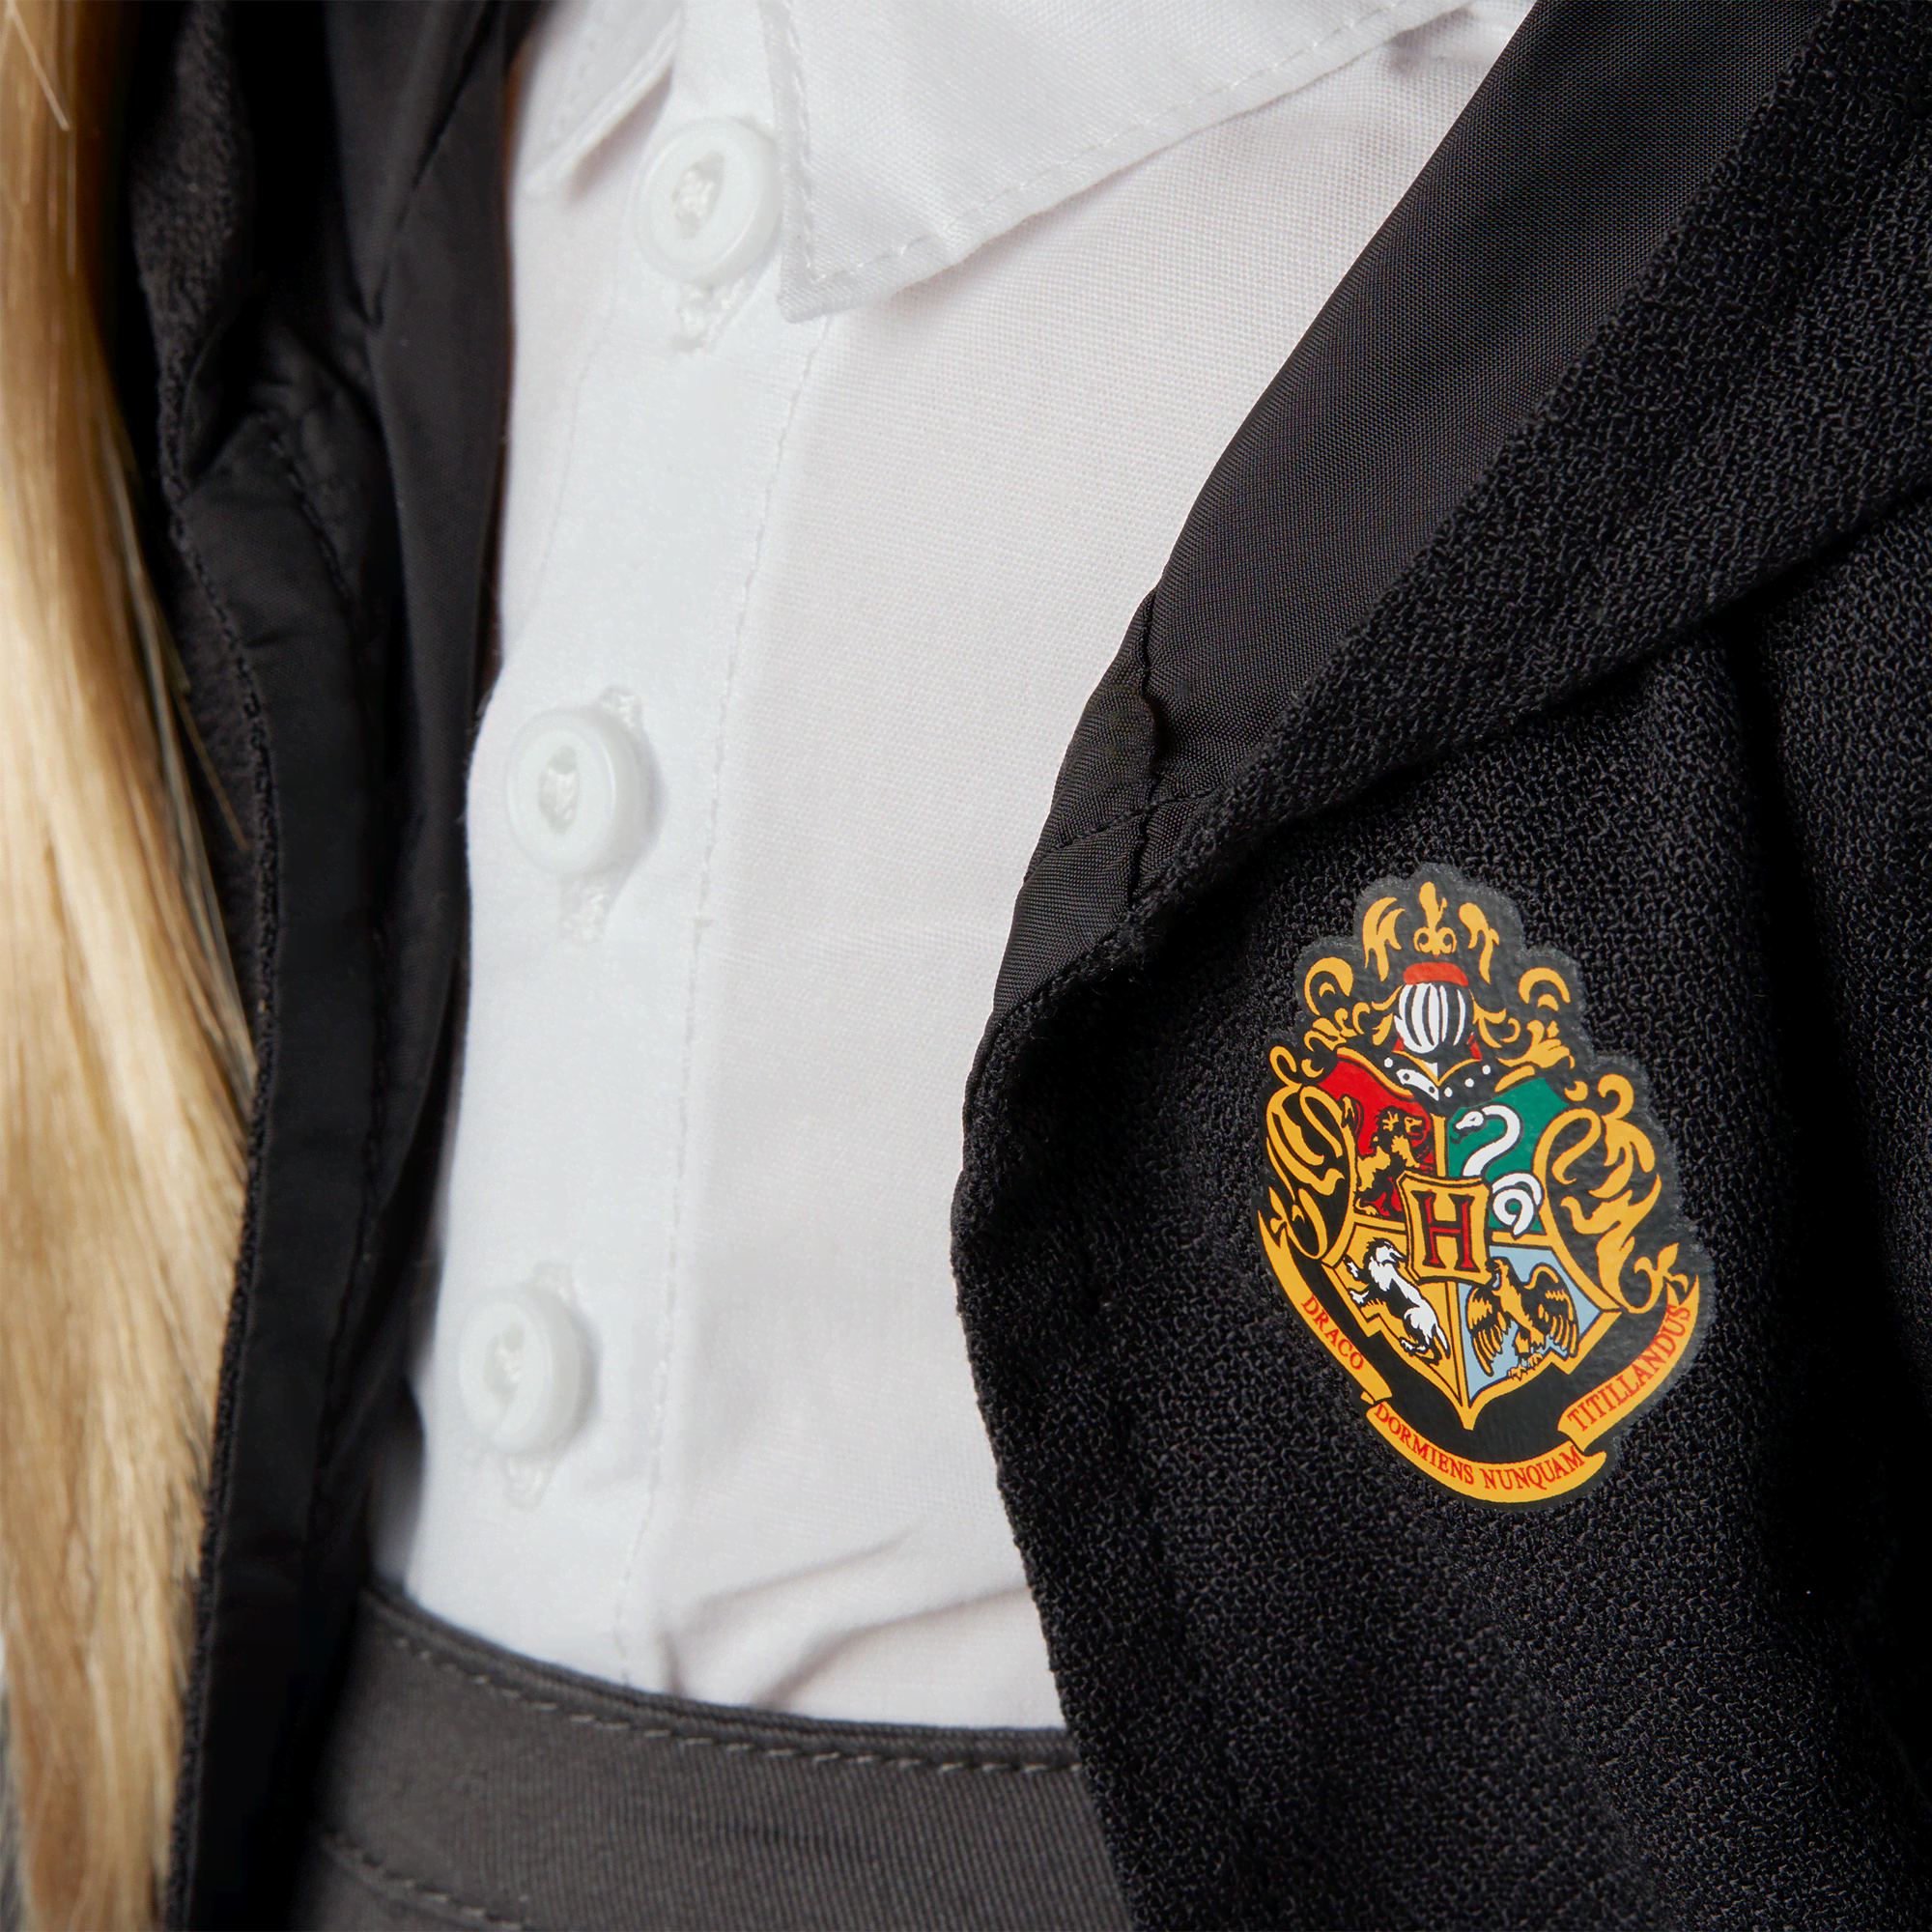 American Girl® Hogwarts™ Skirt Uniform & Accessories